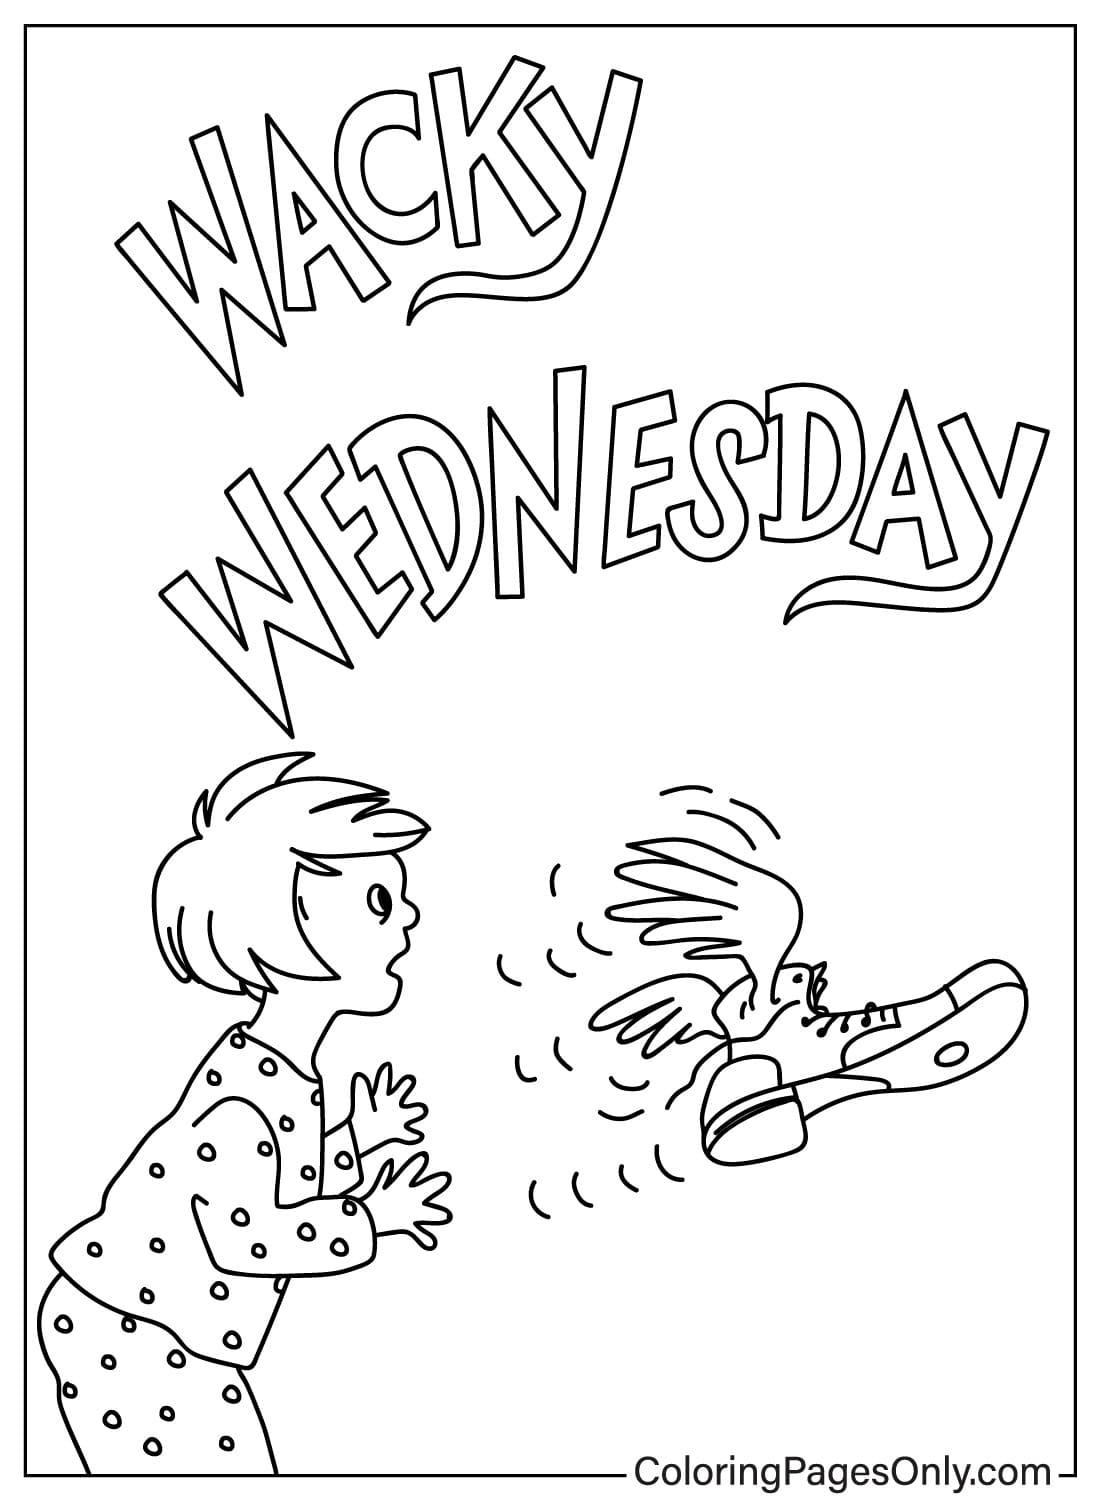 Dr. Seuss Wacky Wednesday kleurplaat van Wacky Wednesday